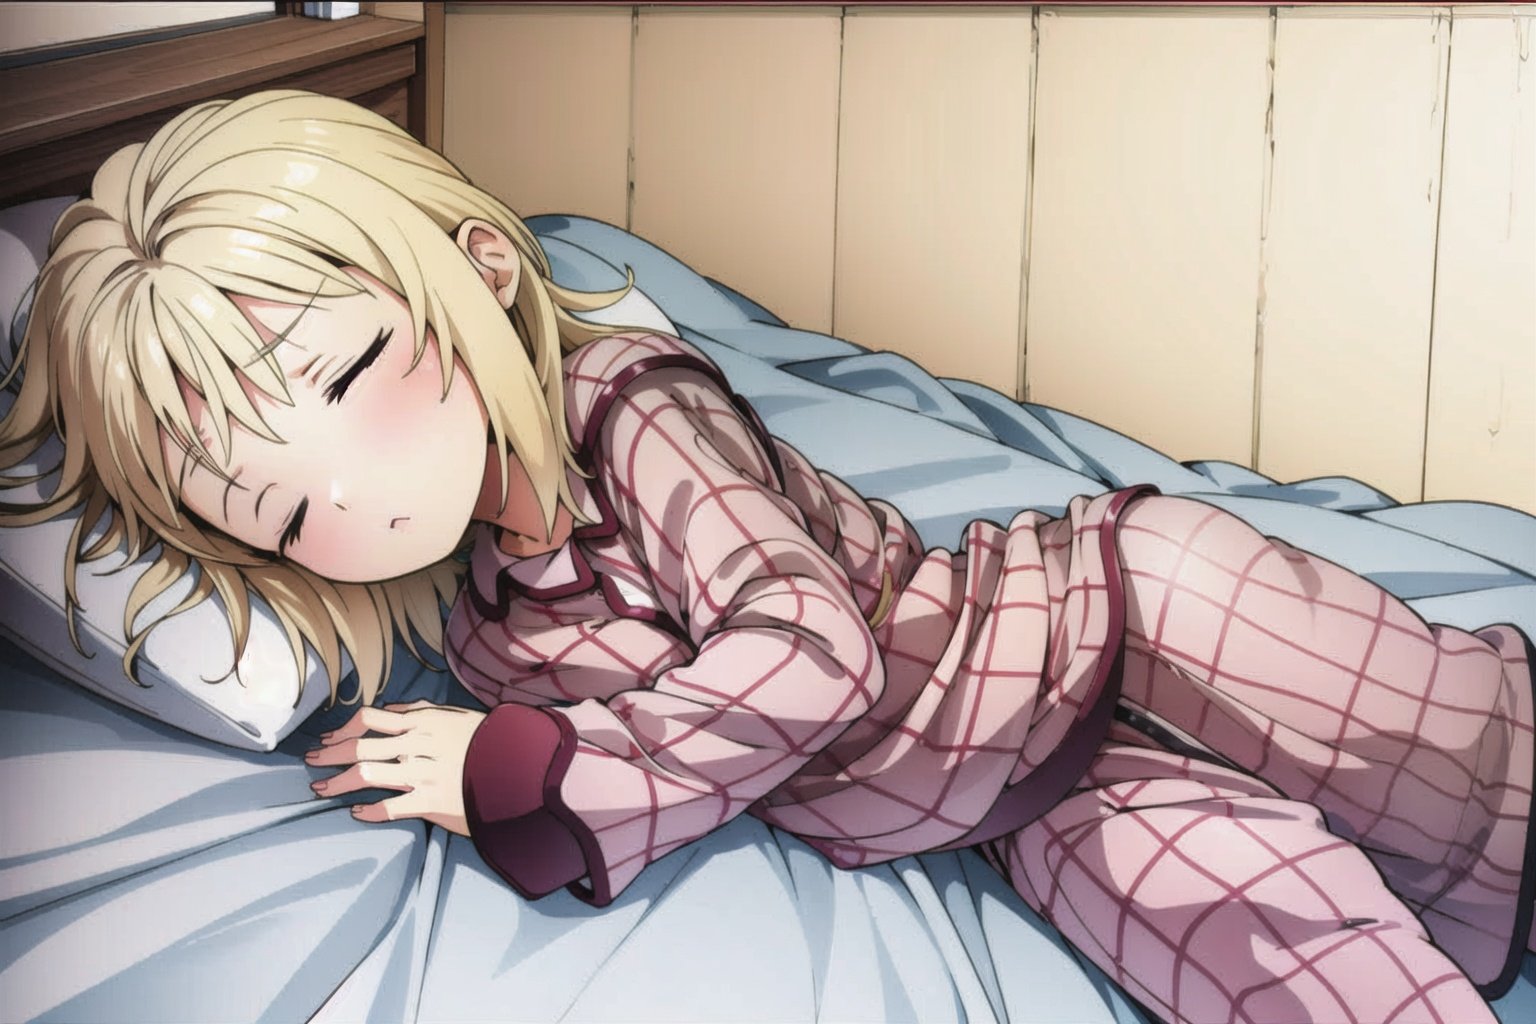 <lora:tina_wai:0.6>, blond hair, pajamas,sleepy, on bed  